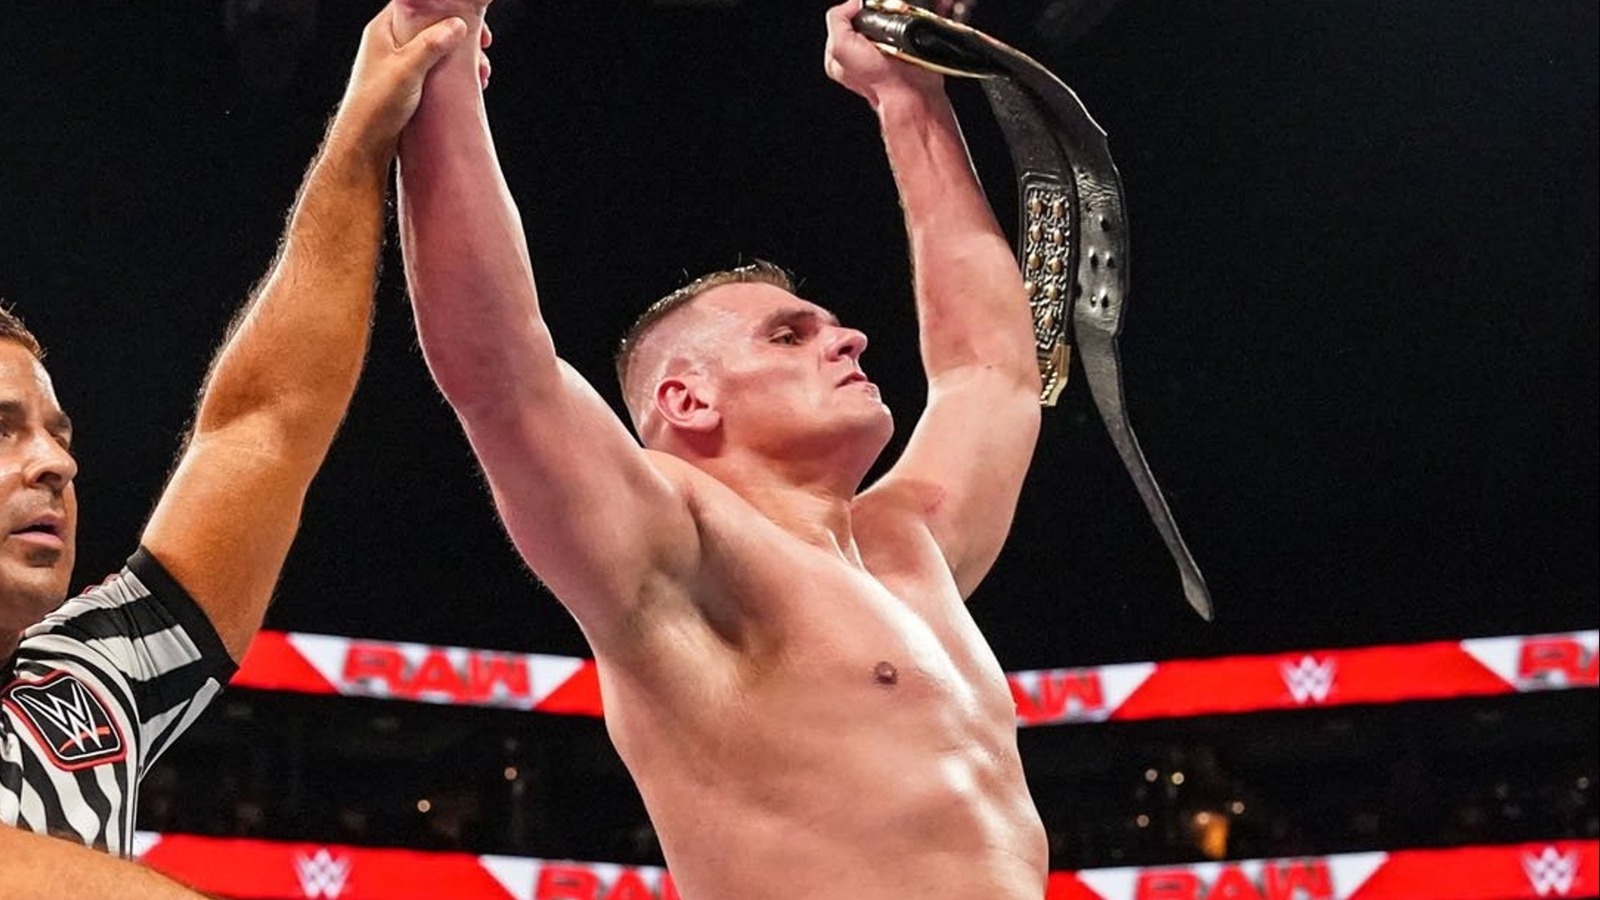 GUNTHER se convierte oficialmente en el campeón intercontinental con el reinado más largo en la historia de la WWE